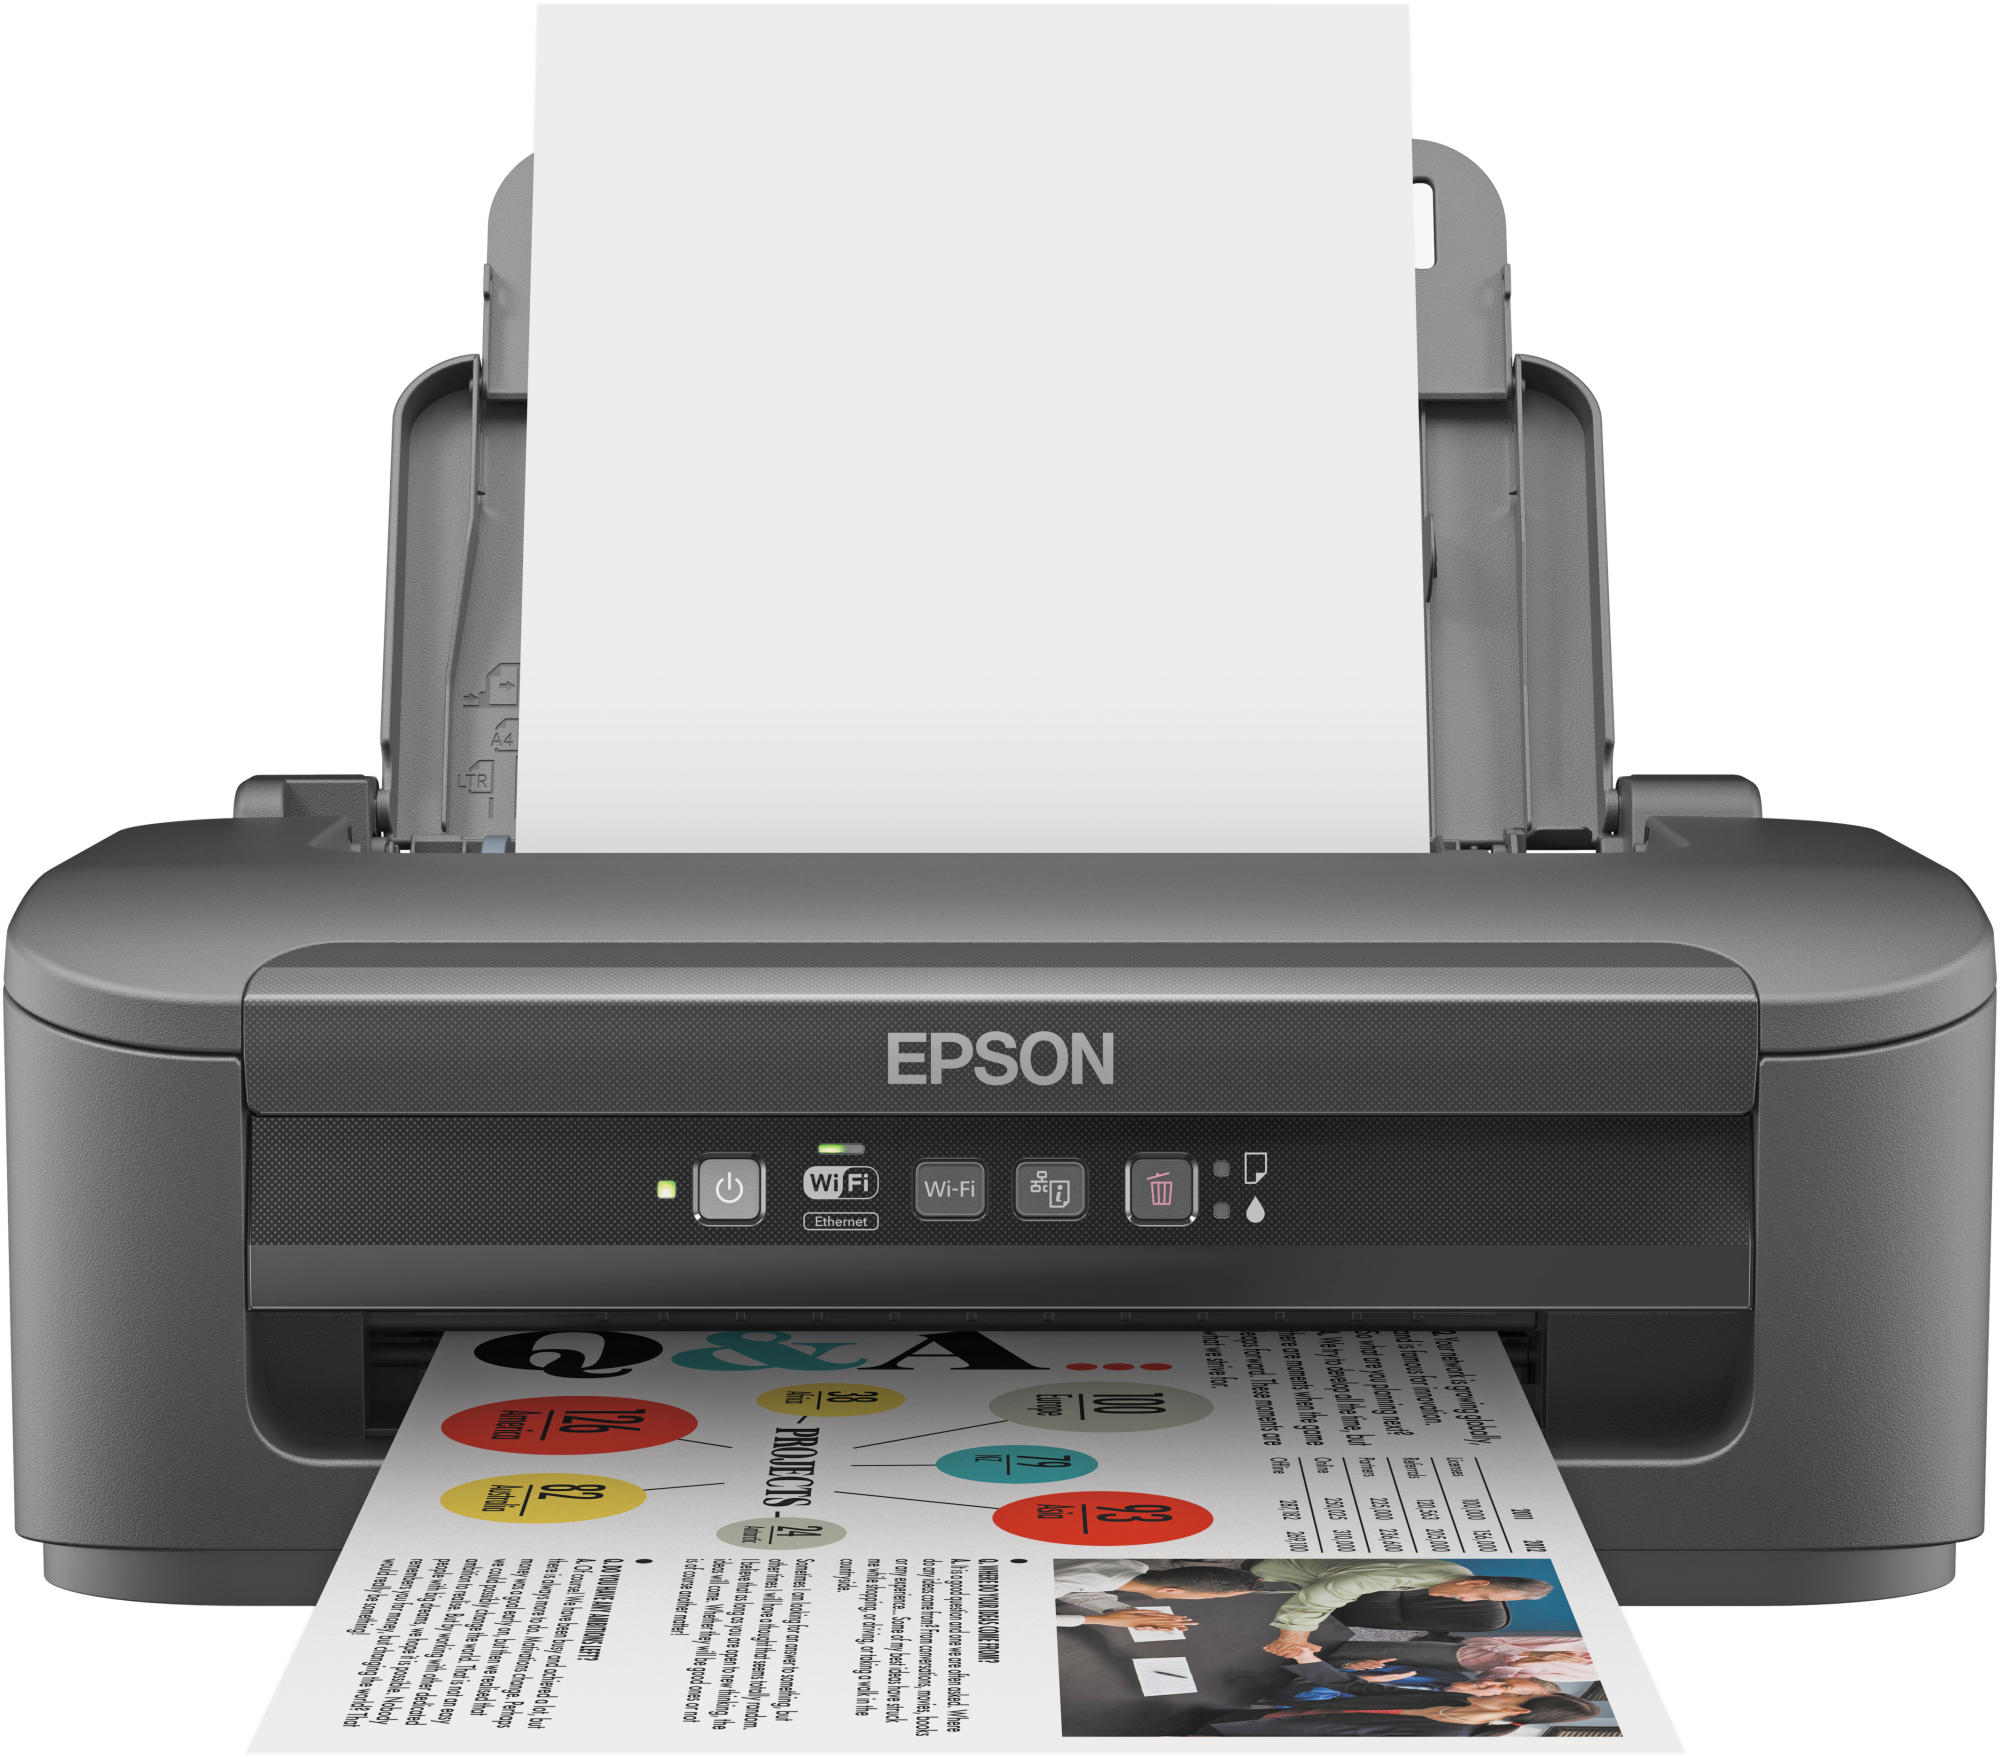 Epson Workforce Wf2010w impresora wifi inyección de tinta con